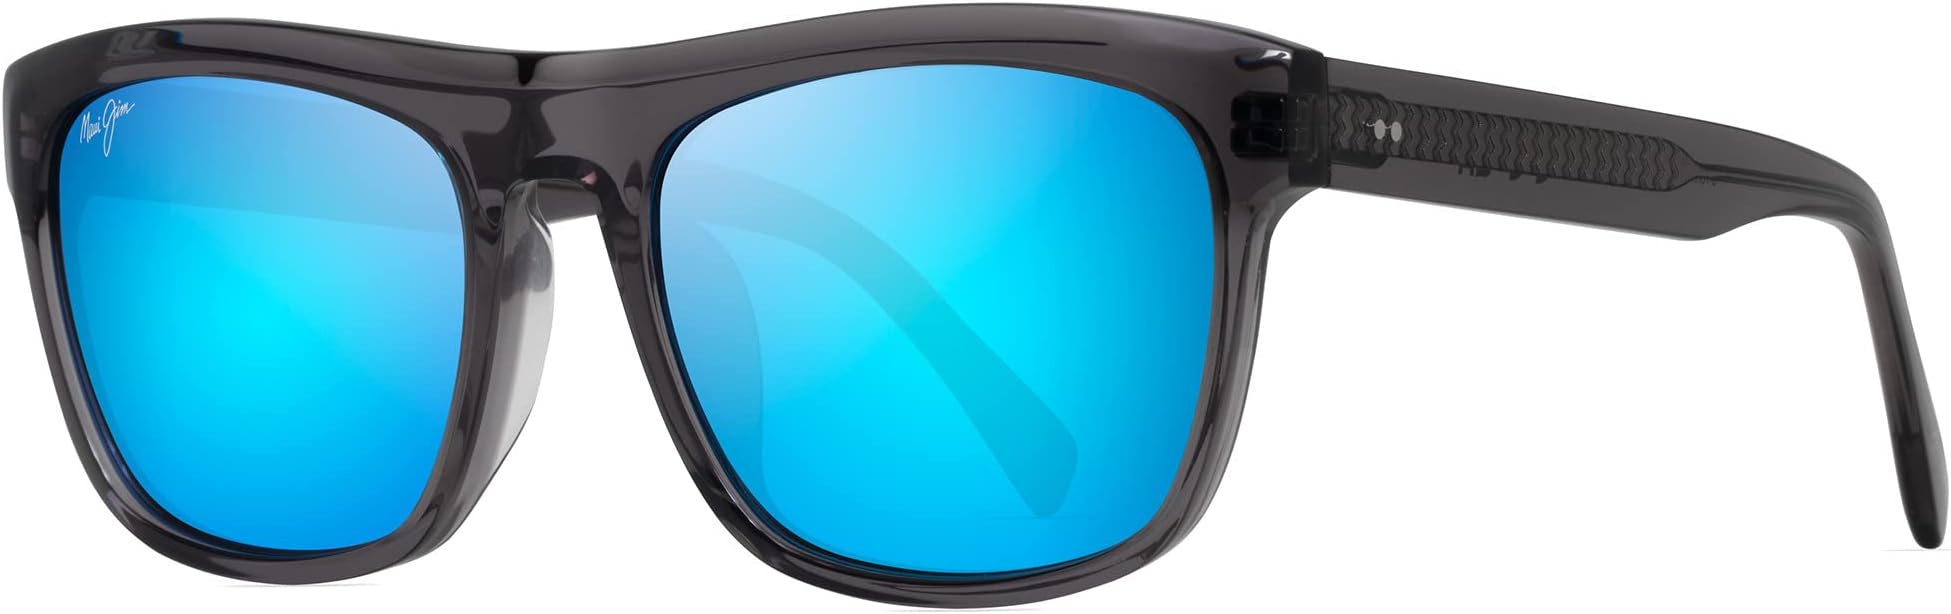 Солнцезащитные очки S-Turns Maui Jim, цвет Dark Translucent Grey/Blue Hawaii солнцезащитные очки one way maui jim цвет dark navy stripe blue hawaii